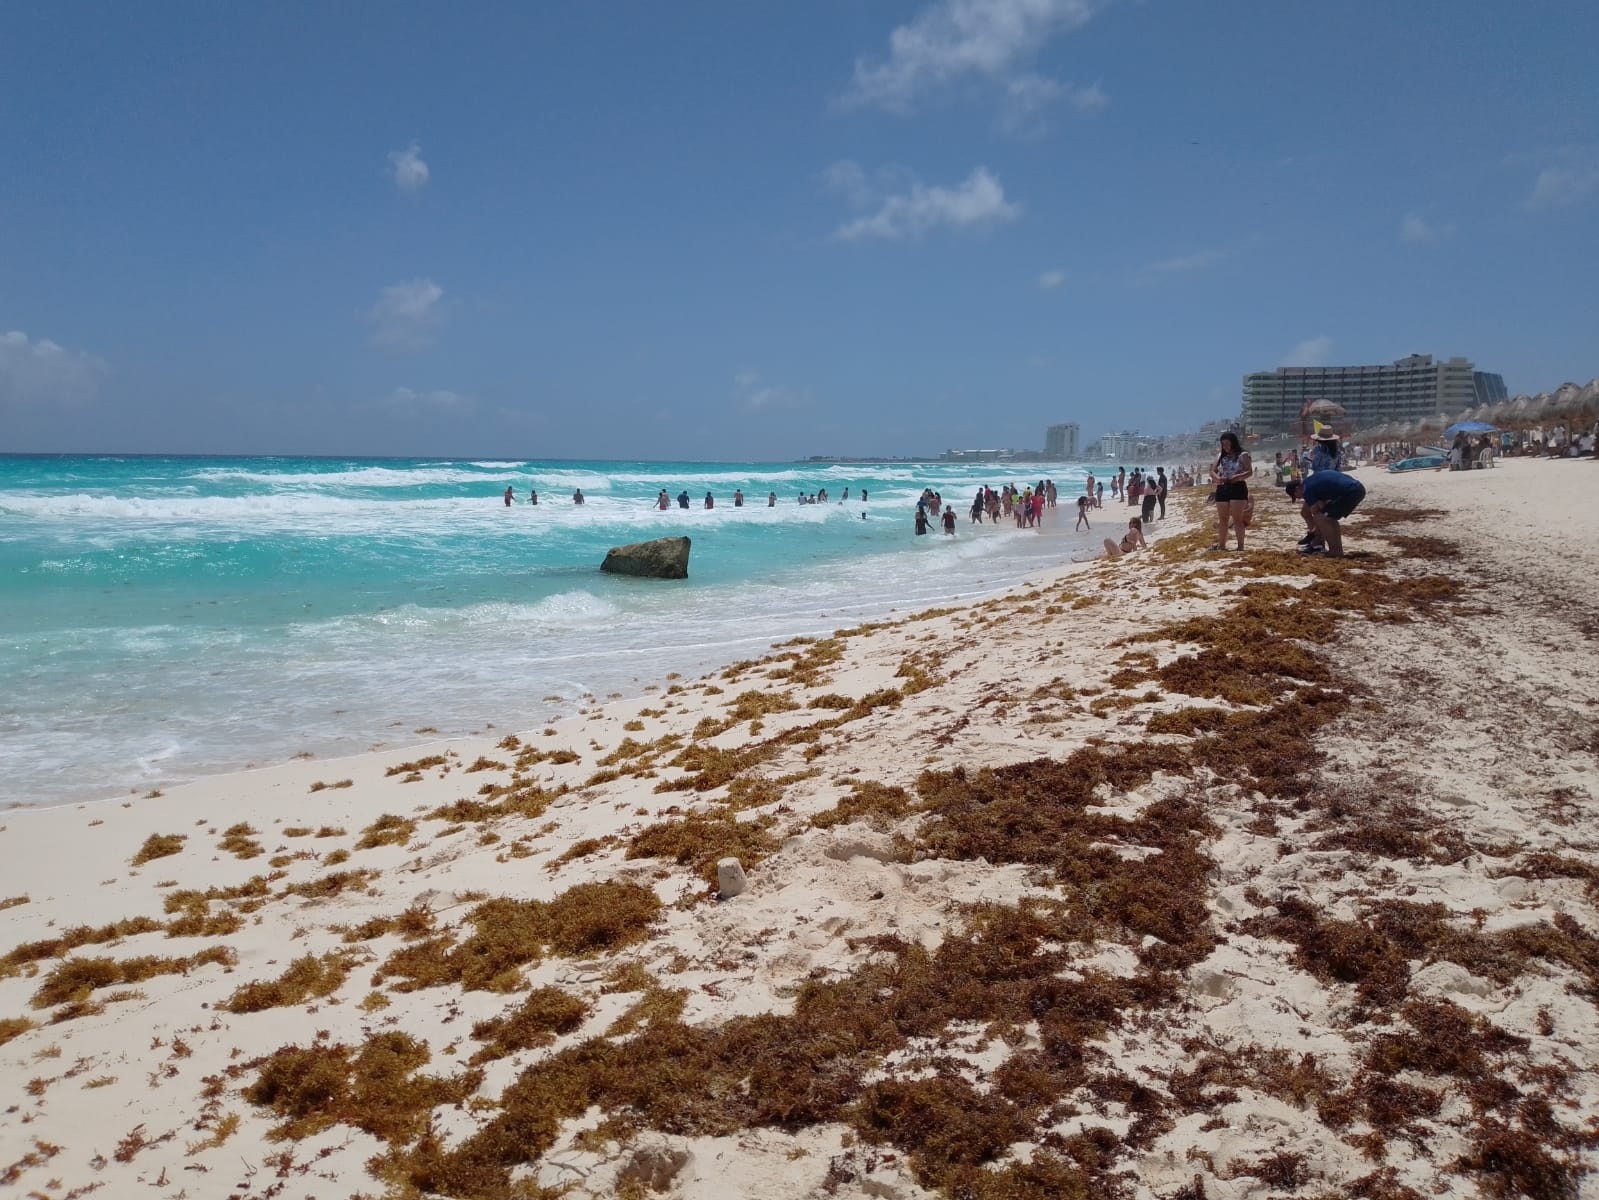 Las temperaturas en la Península de Yucatán oscila entre los 30 y 36 grados centígrados, según The Weather Channel